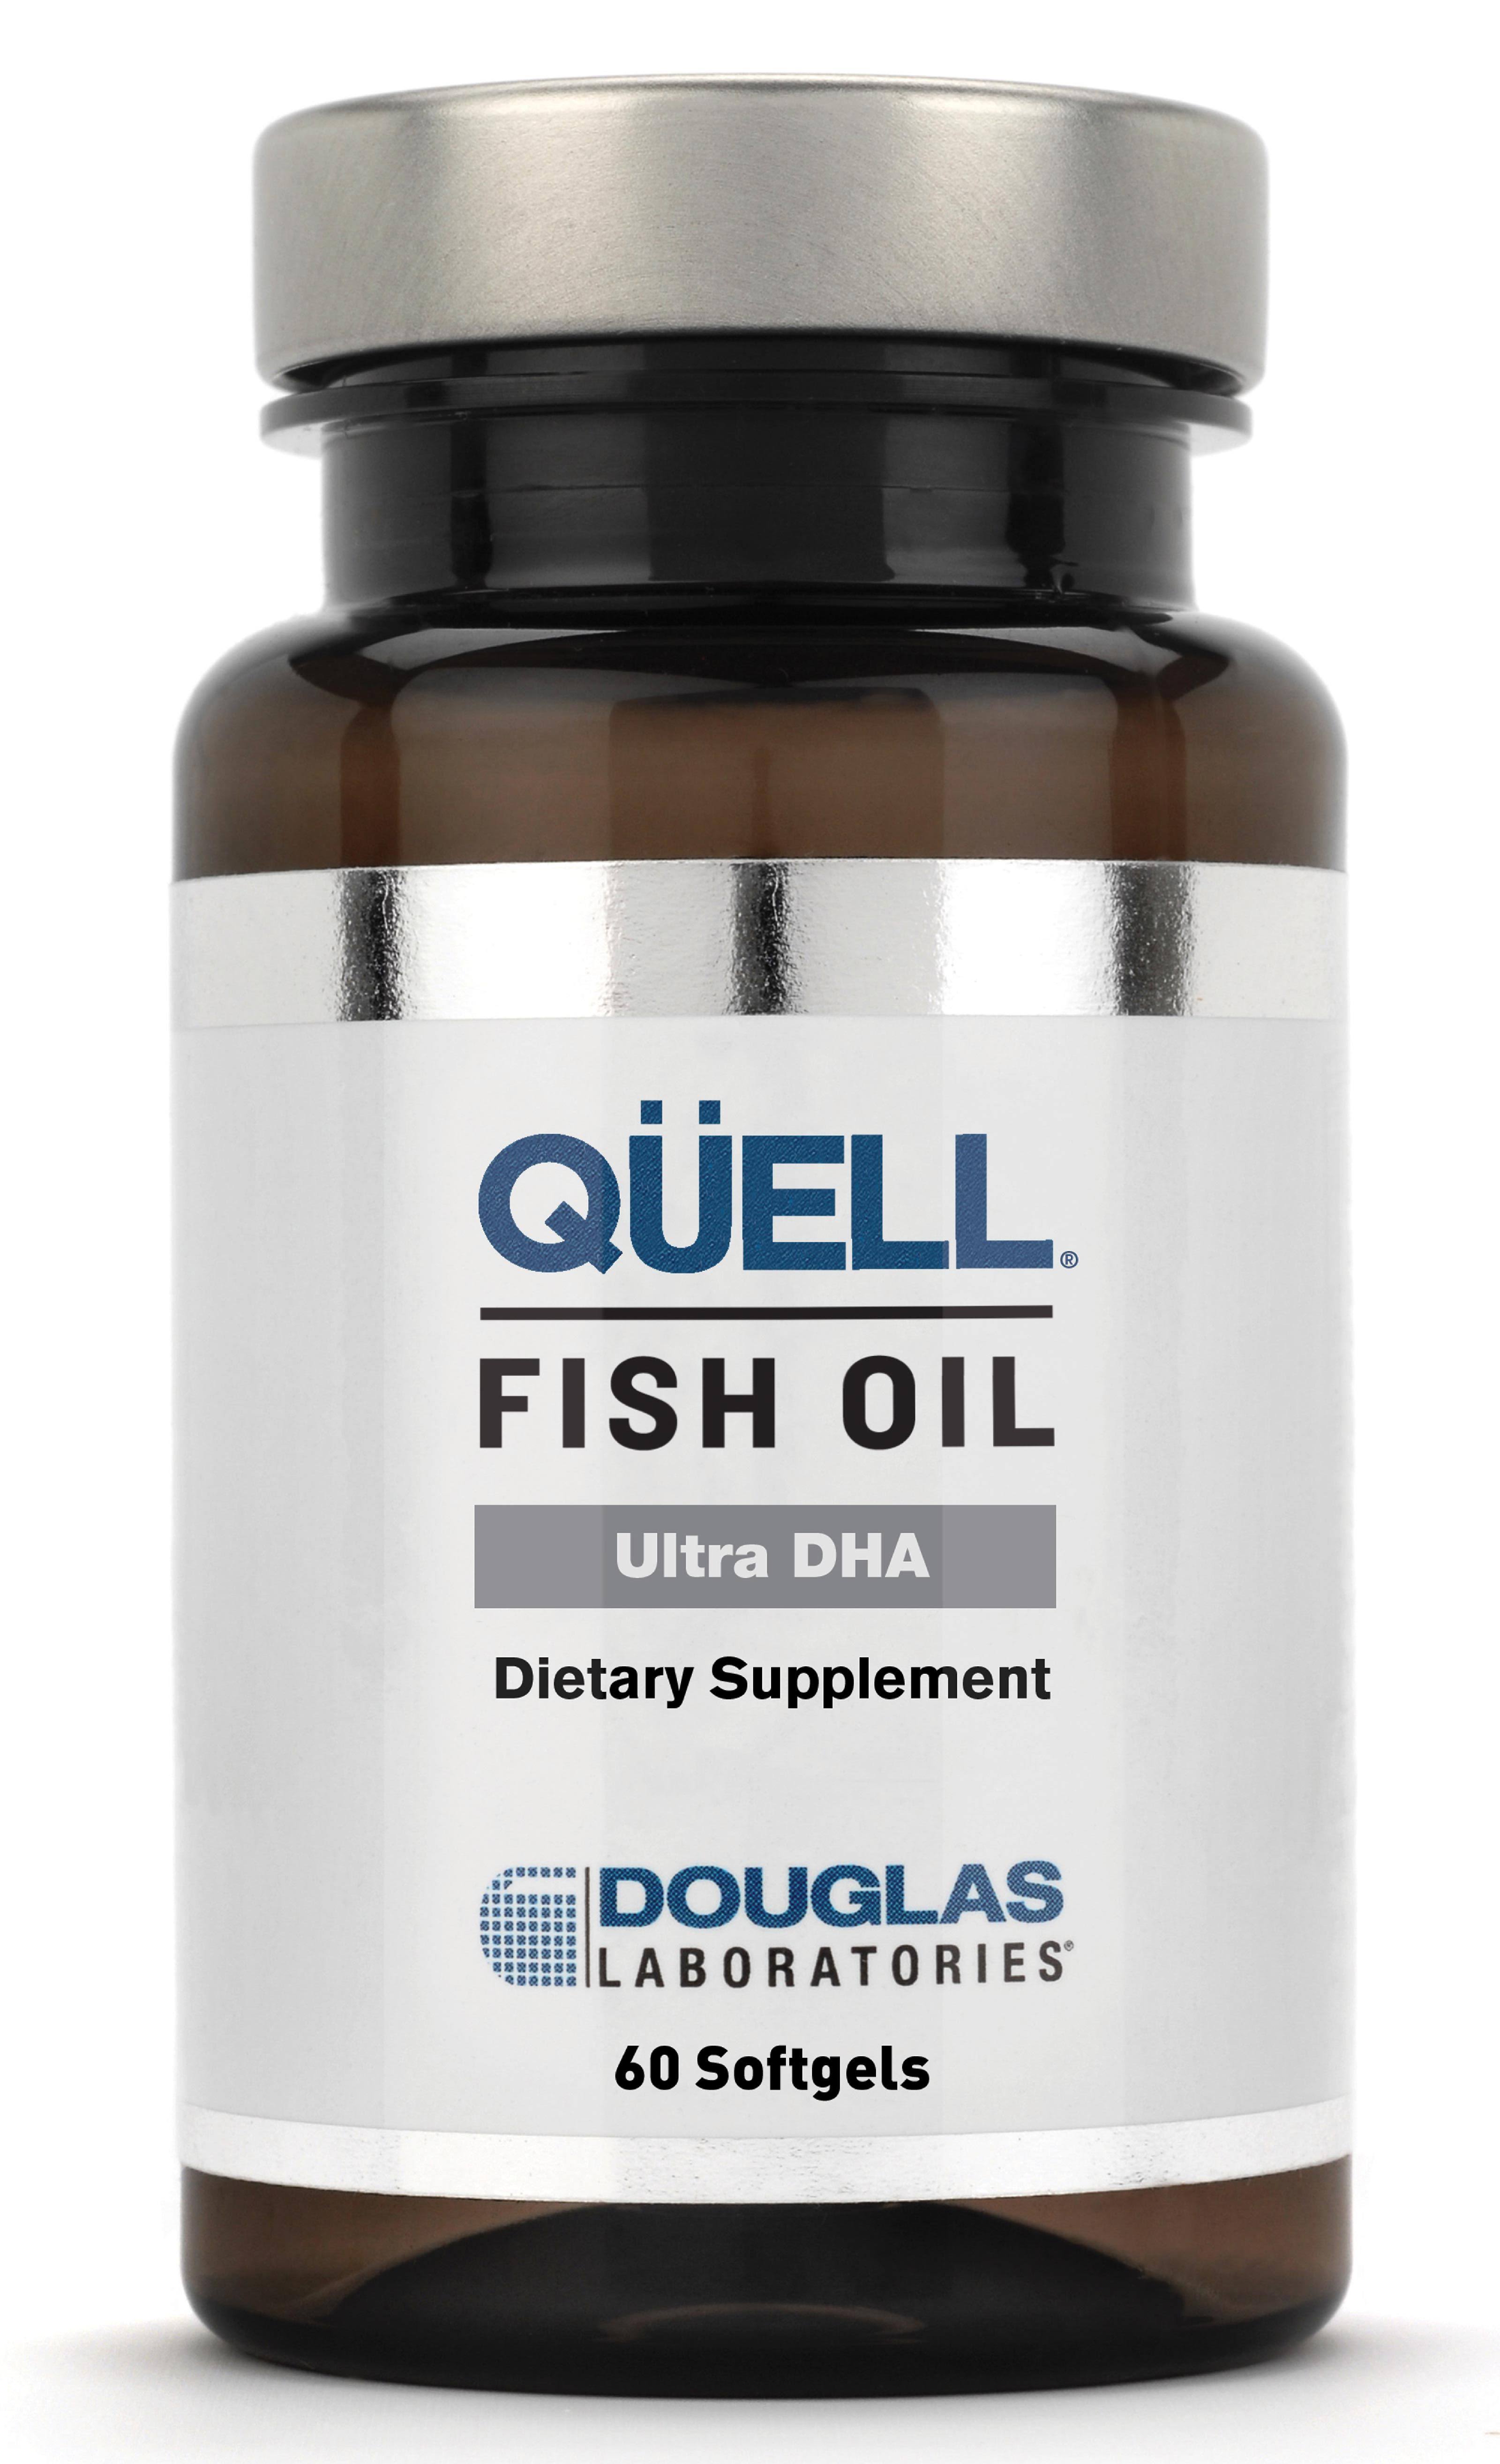 Douglas Laboratories Quell Fish Oil Supplement - 60 Softgels